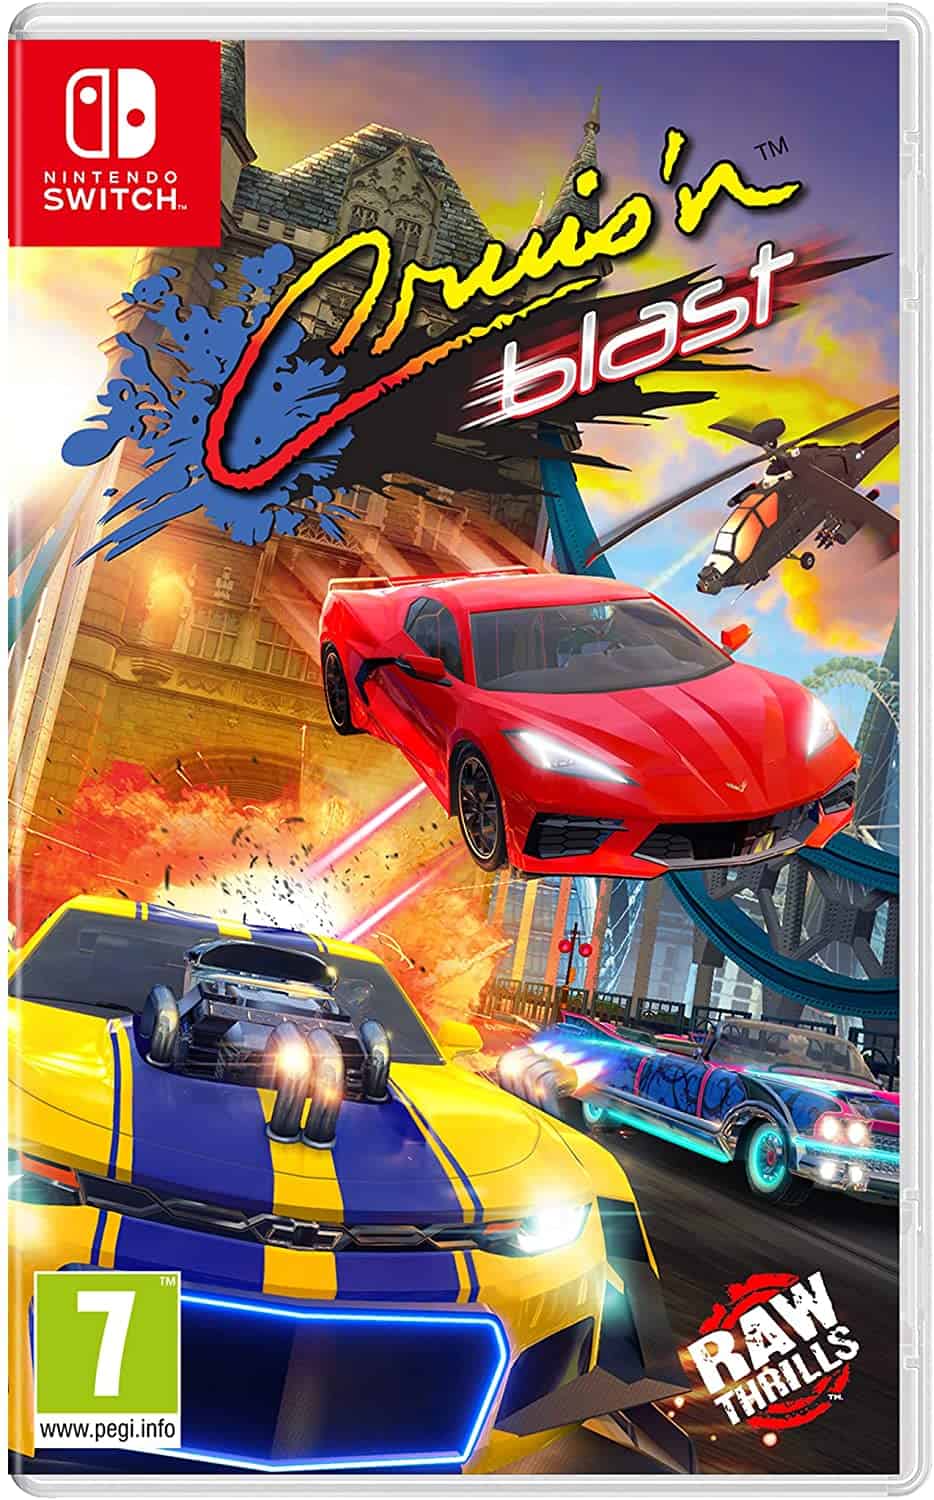 Cruis'n Blast Review